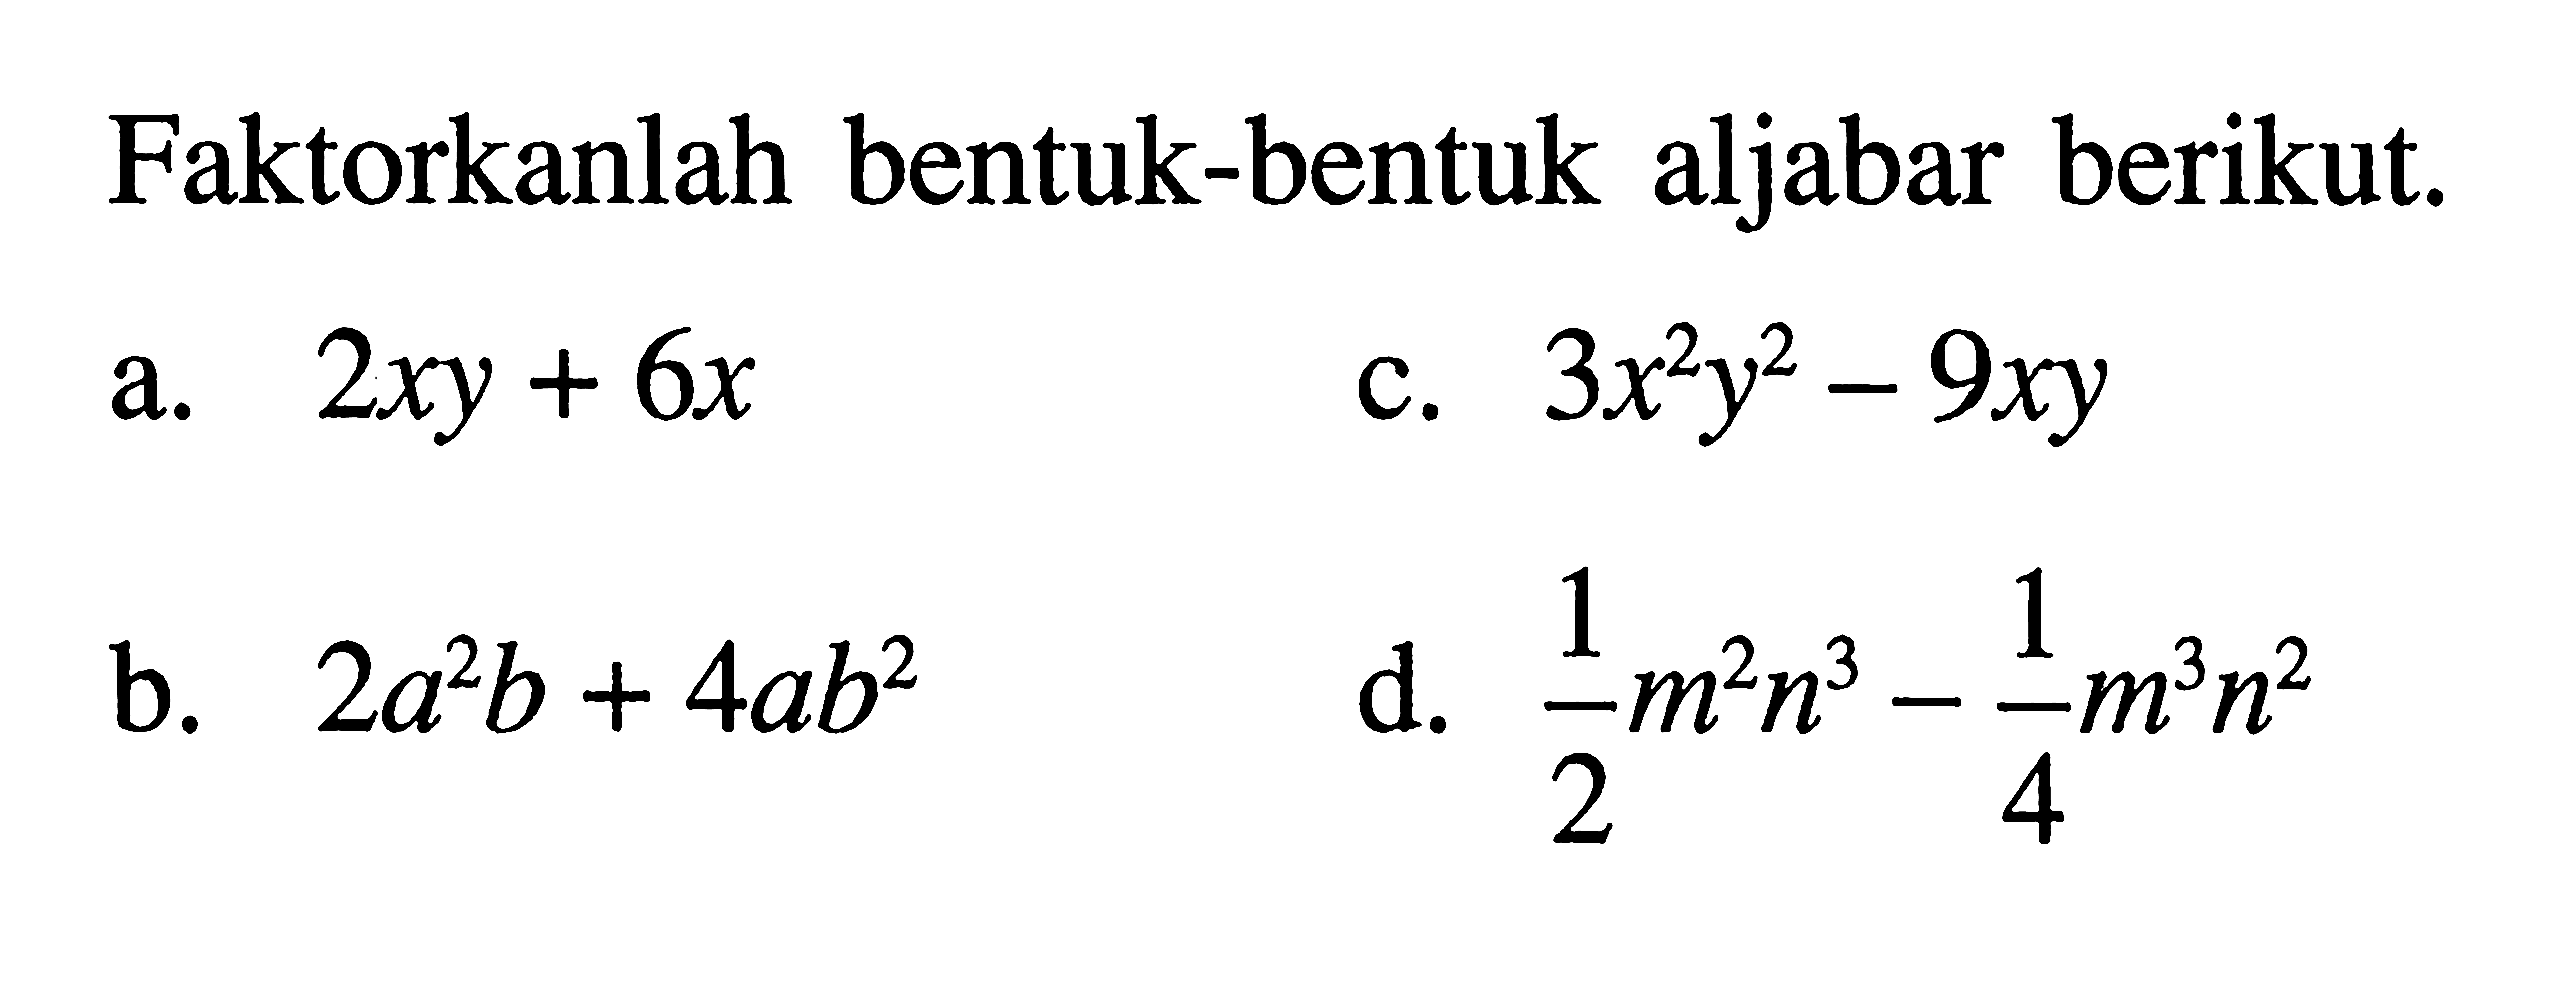 Faktorkanlah bentuk-bentuk aljabar berikut. a. 2xy + 6x b. 2a^2 b + 4ab^2 c. 3x^2 y^2 - 9xy d. 1/2 m^2 n^3 - 1/4 m^3 n^2